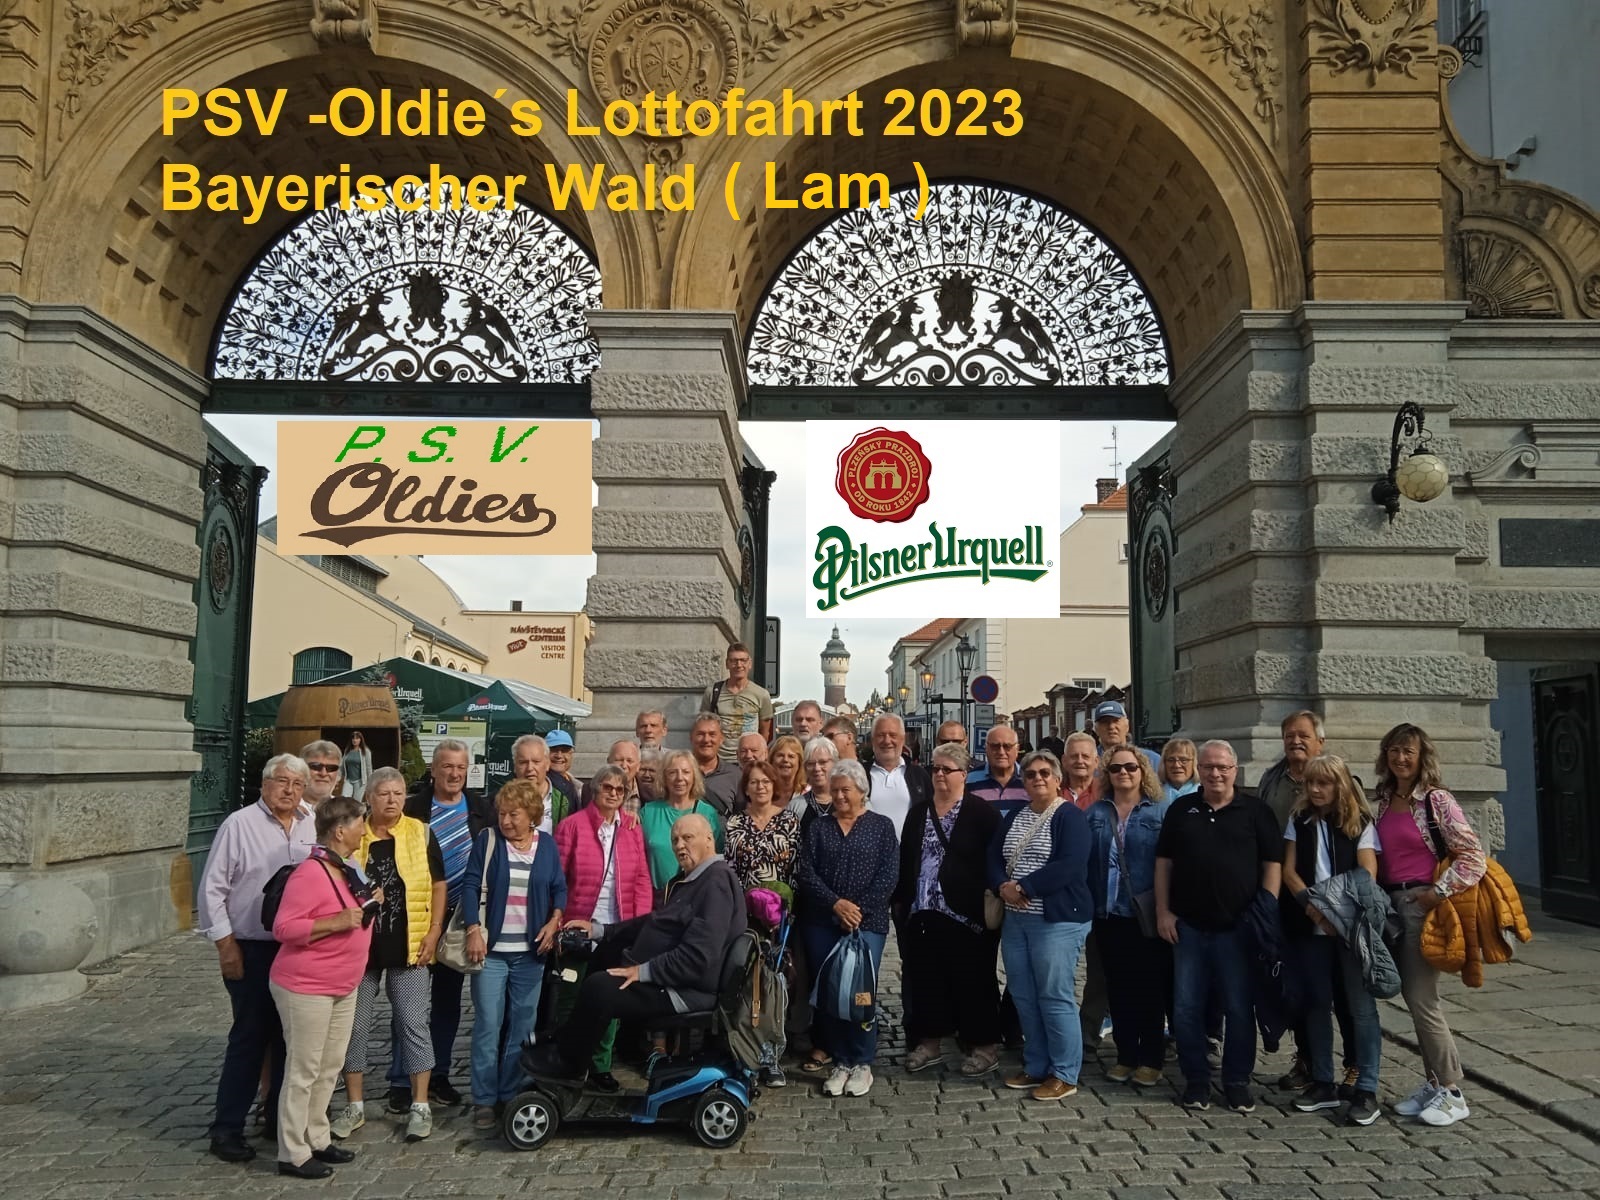 PSV-Oldies' Lottofahrt 2023 Bayerischer Wald (Lam)